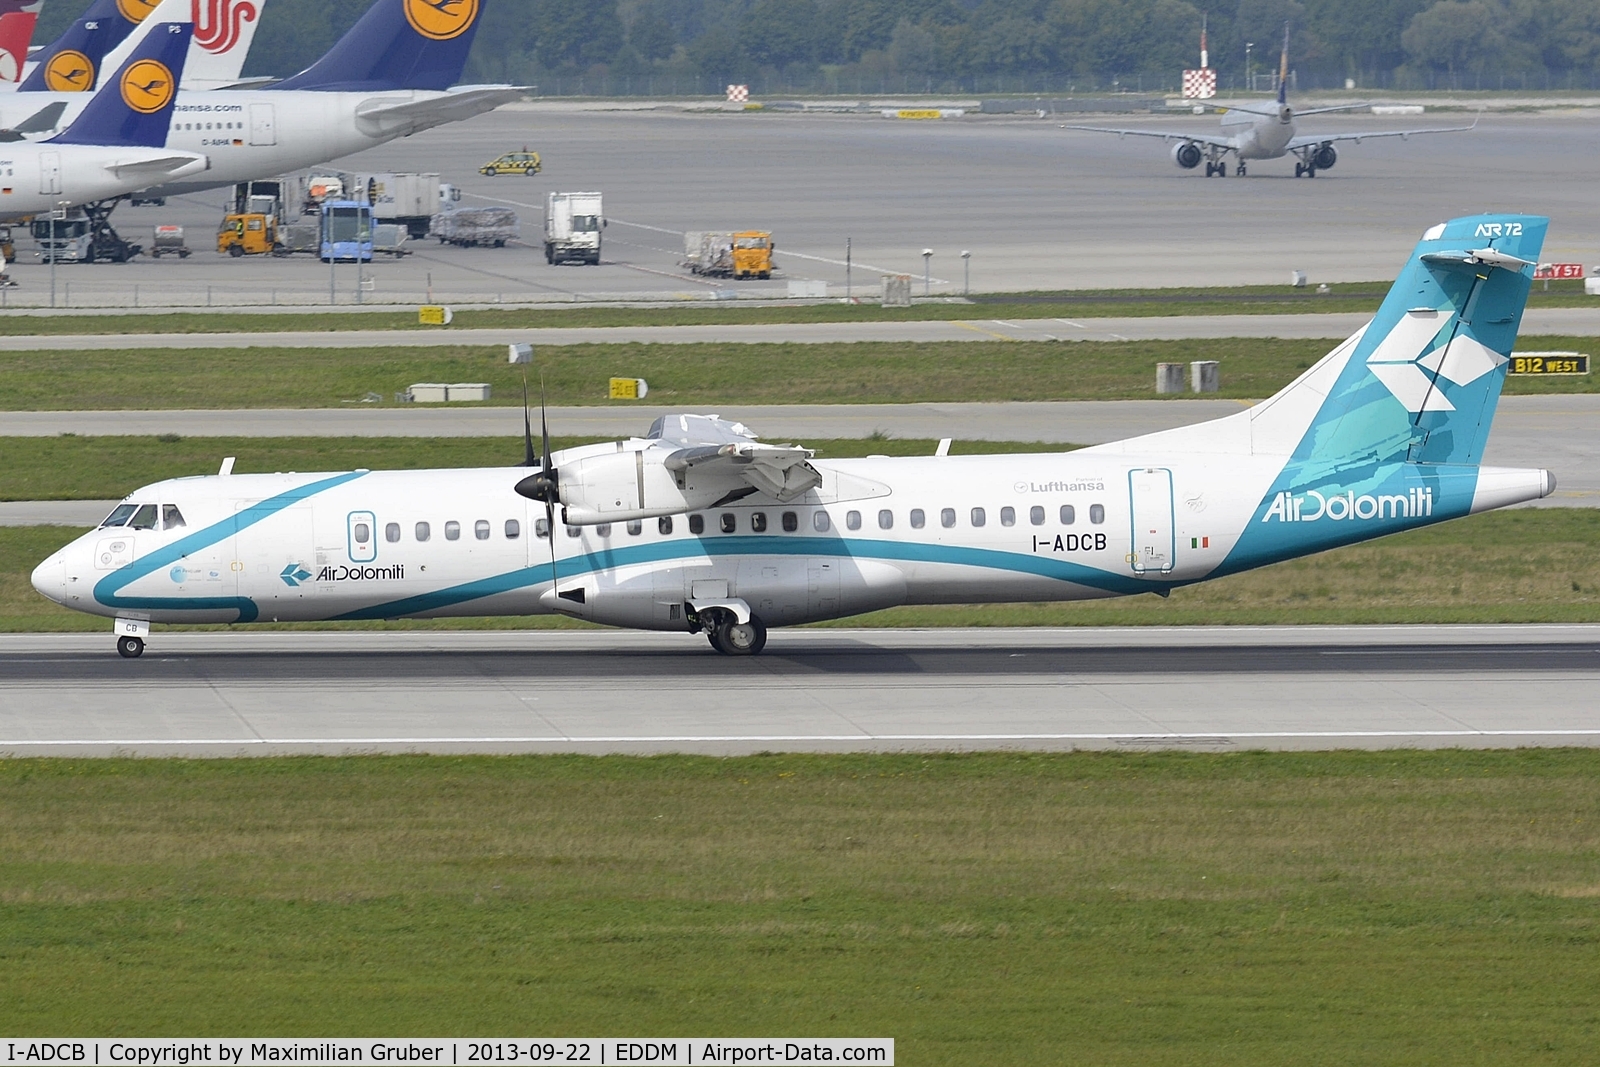 I-ADCB, 2001 ATR 72-500 C/N 660, Air Dolomiti